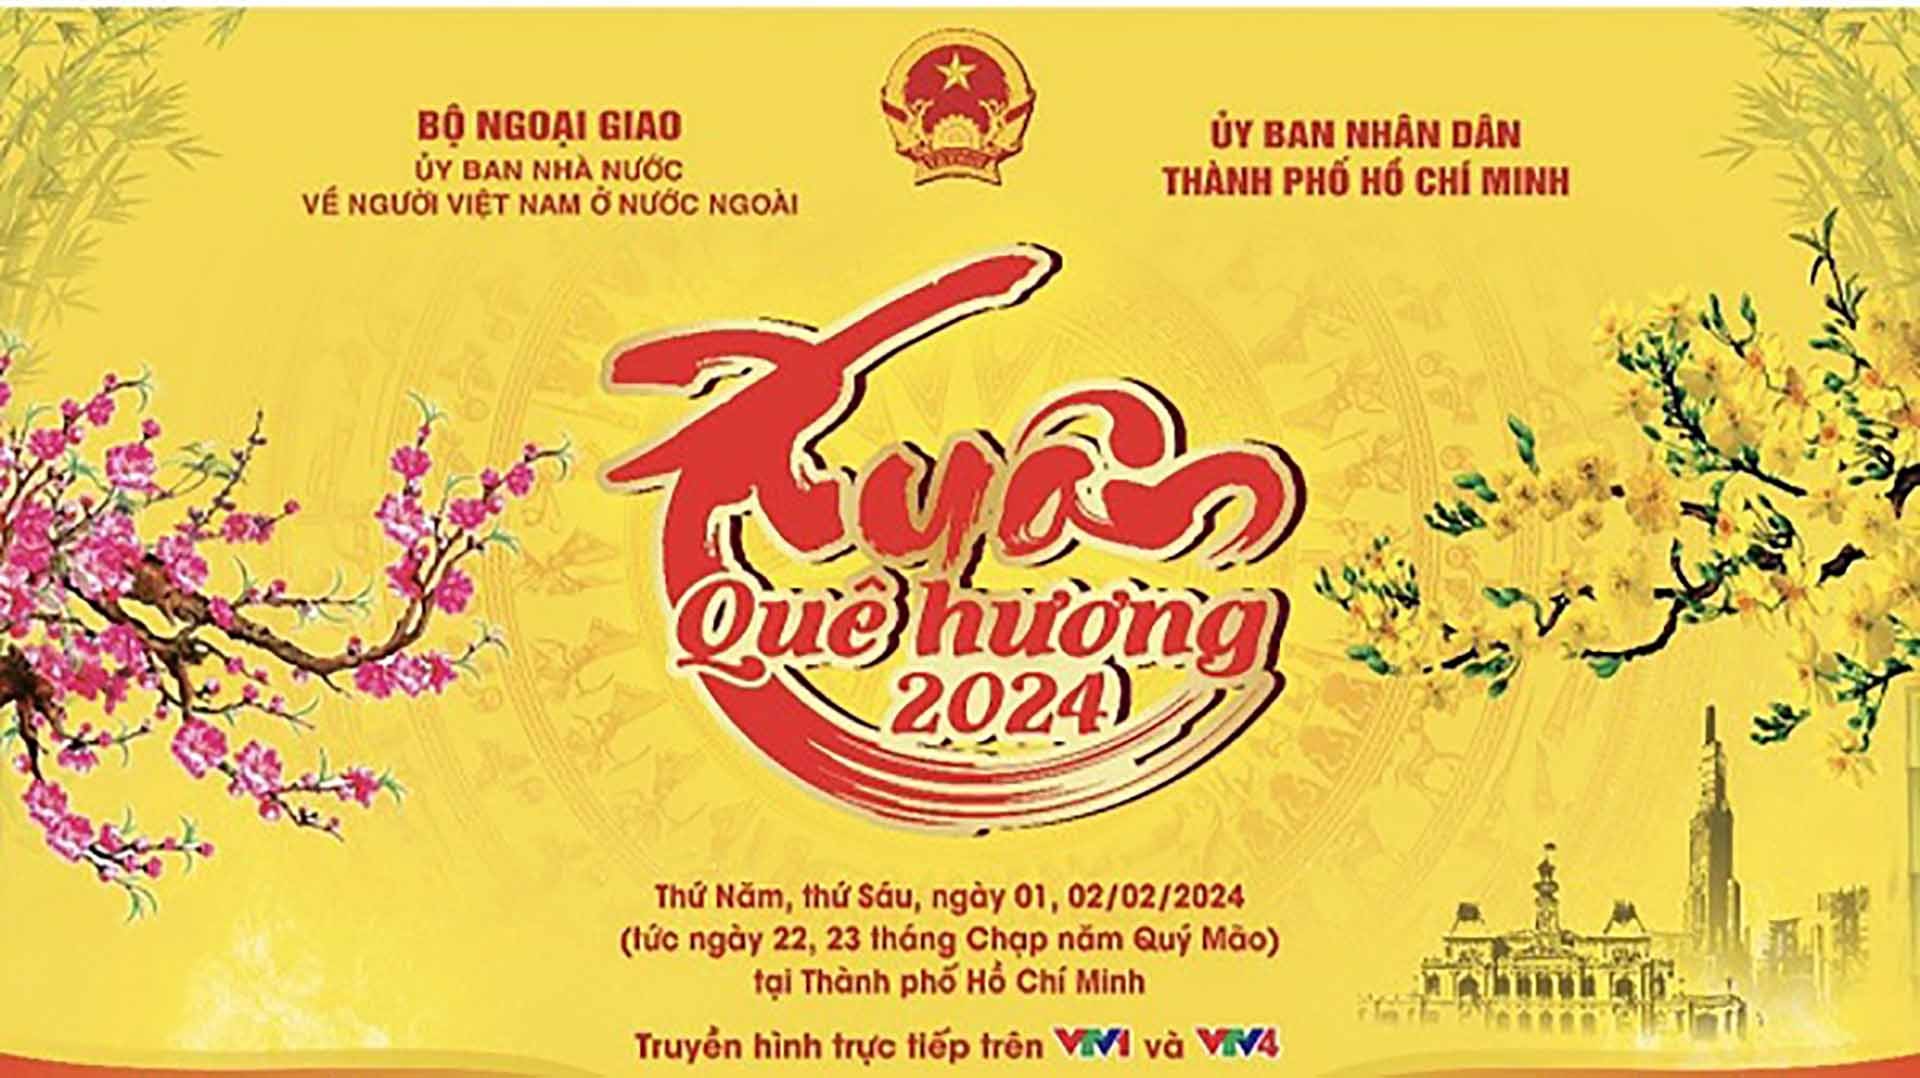 Lần thứ ba được tổ chức tại TP. Hồ Chí Minh, chương trình Xuân Quê hương 2024 dự kiến có sự tham dự của 1.500 kiều bào và 1.500 khách mời trong nước.